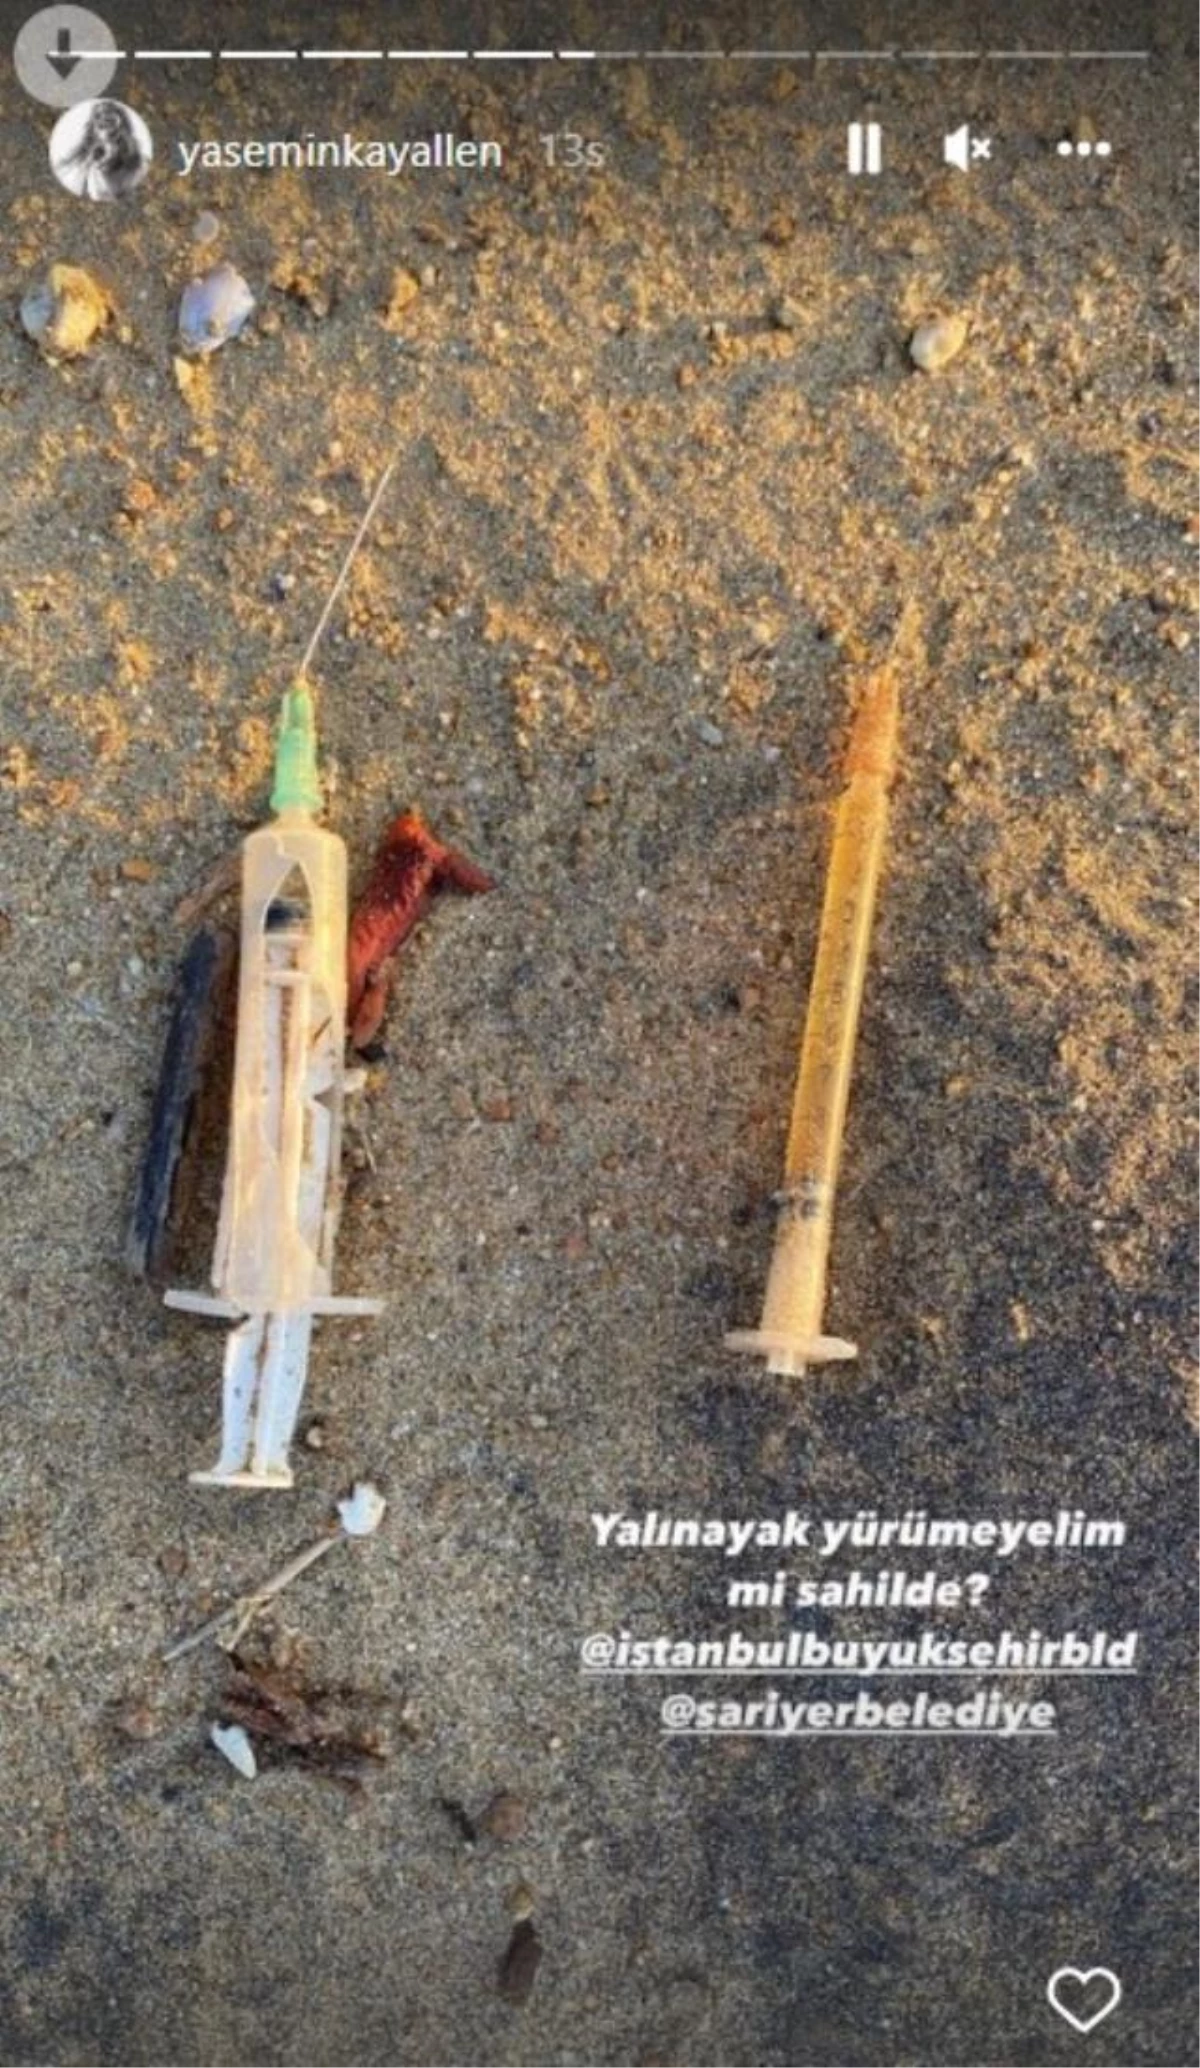 Oyuncu Yasemin Kay Allen, Kilyos Sahili\'nde ölen yunus balığını ve atıklarını paylaşarak sert tepki gösterdi: Bu bir skandaldır